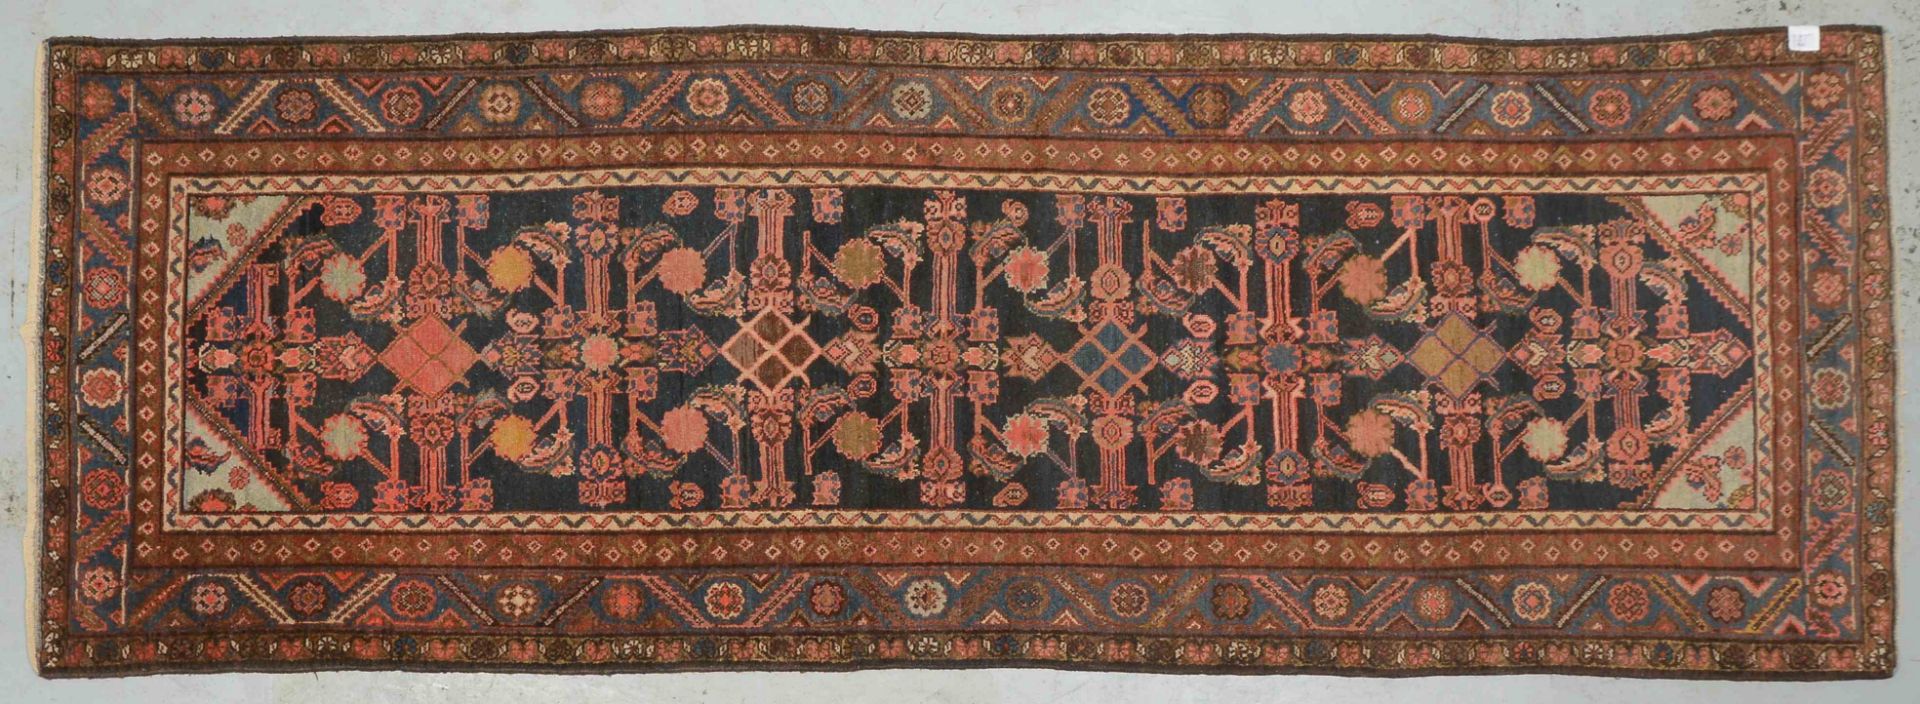 Malayer-Galerie, antik, dunkelblauer Fond, mit Herati-Musterung, gleichmaessiger Flor, in originaler - Bild 2 aus 4